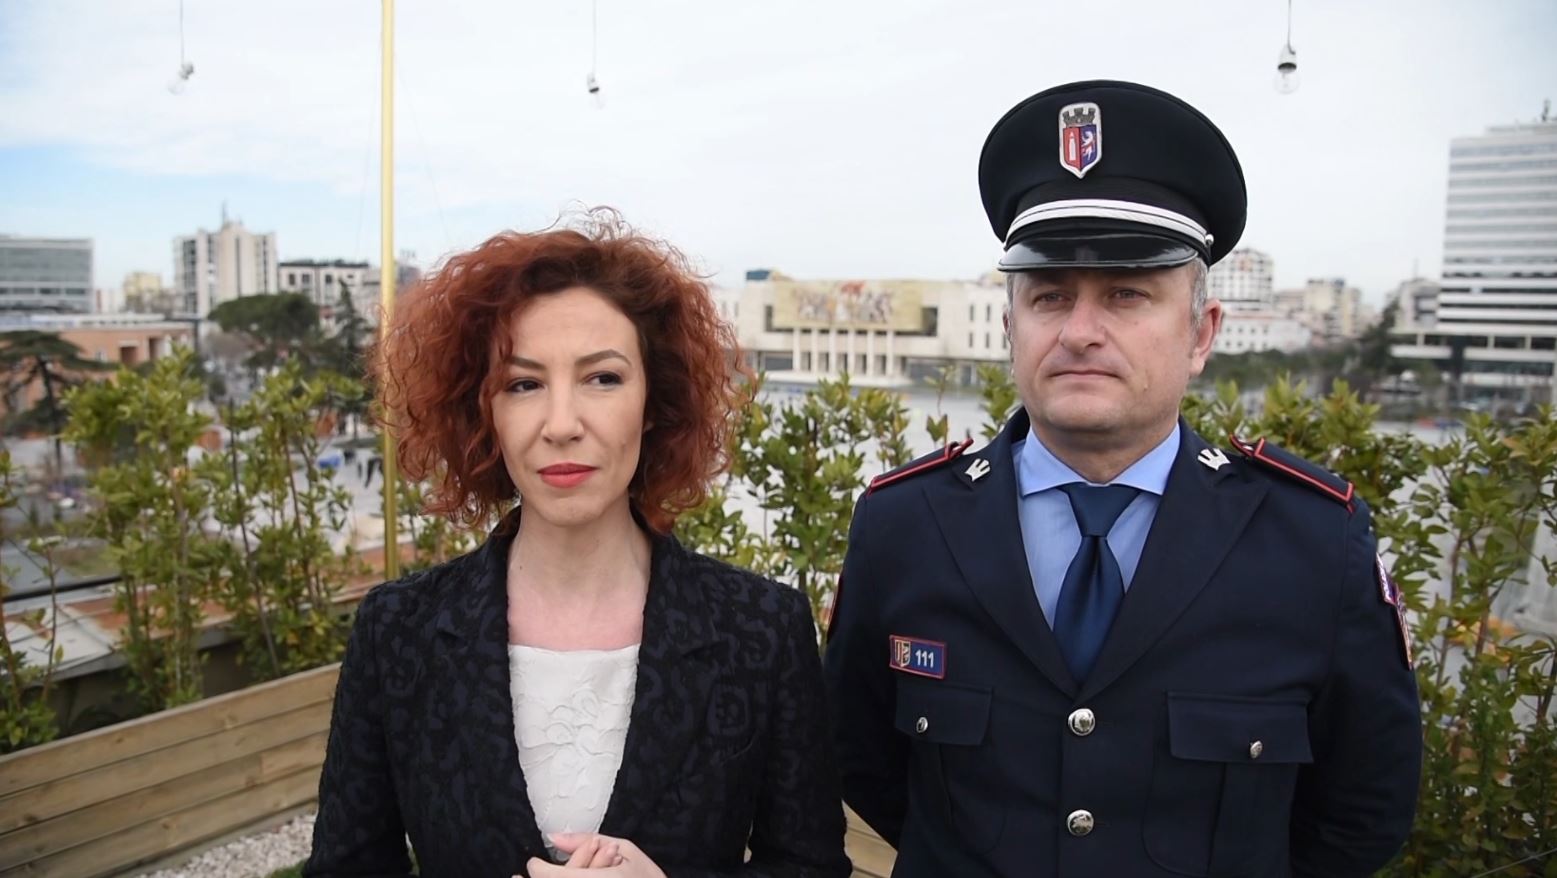 Festimet për Ditën e Verës, Bashkia e Tiranës jep detajet për aktivitetet